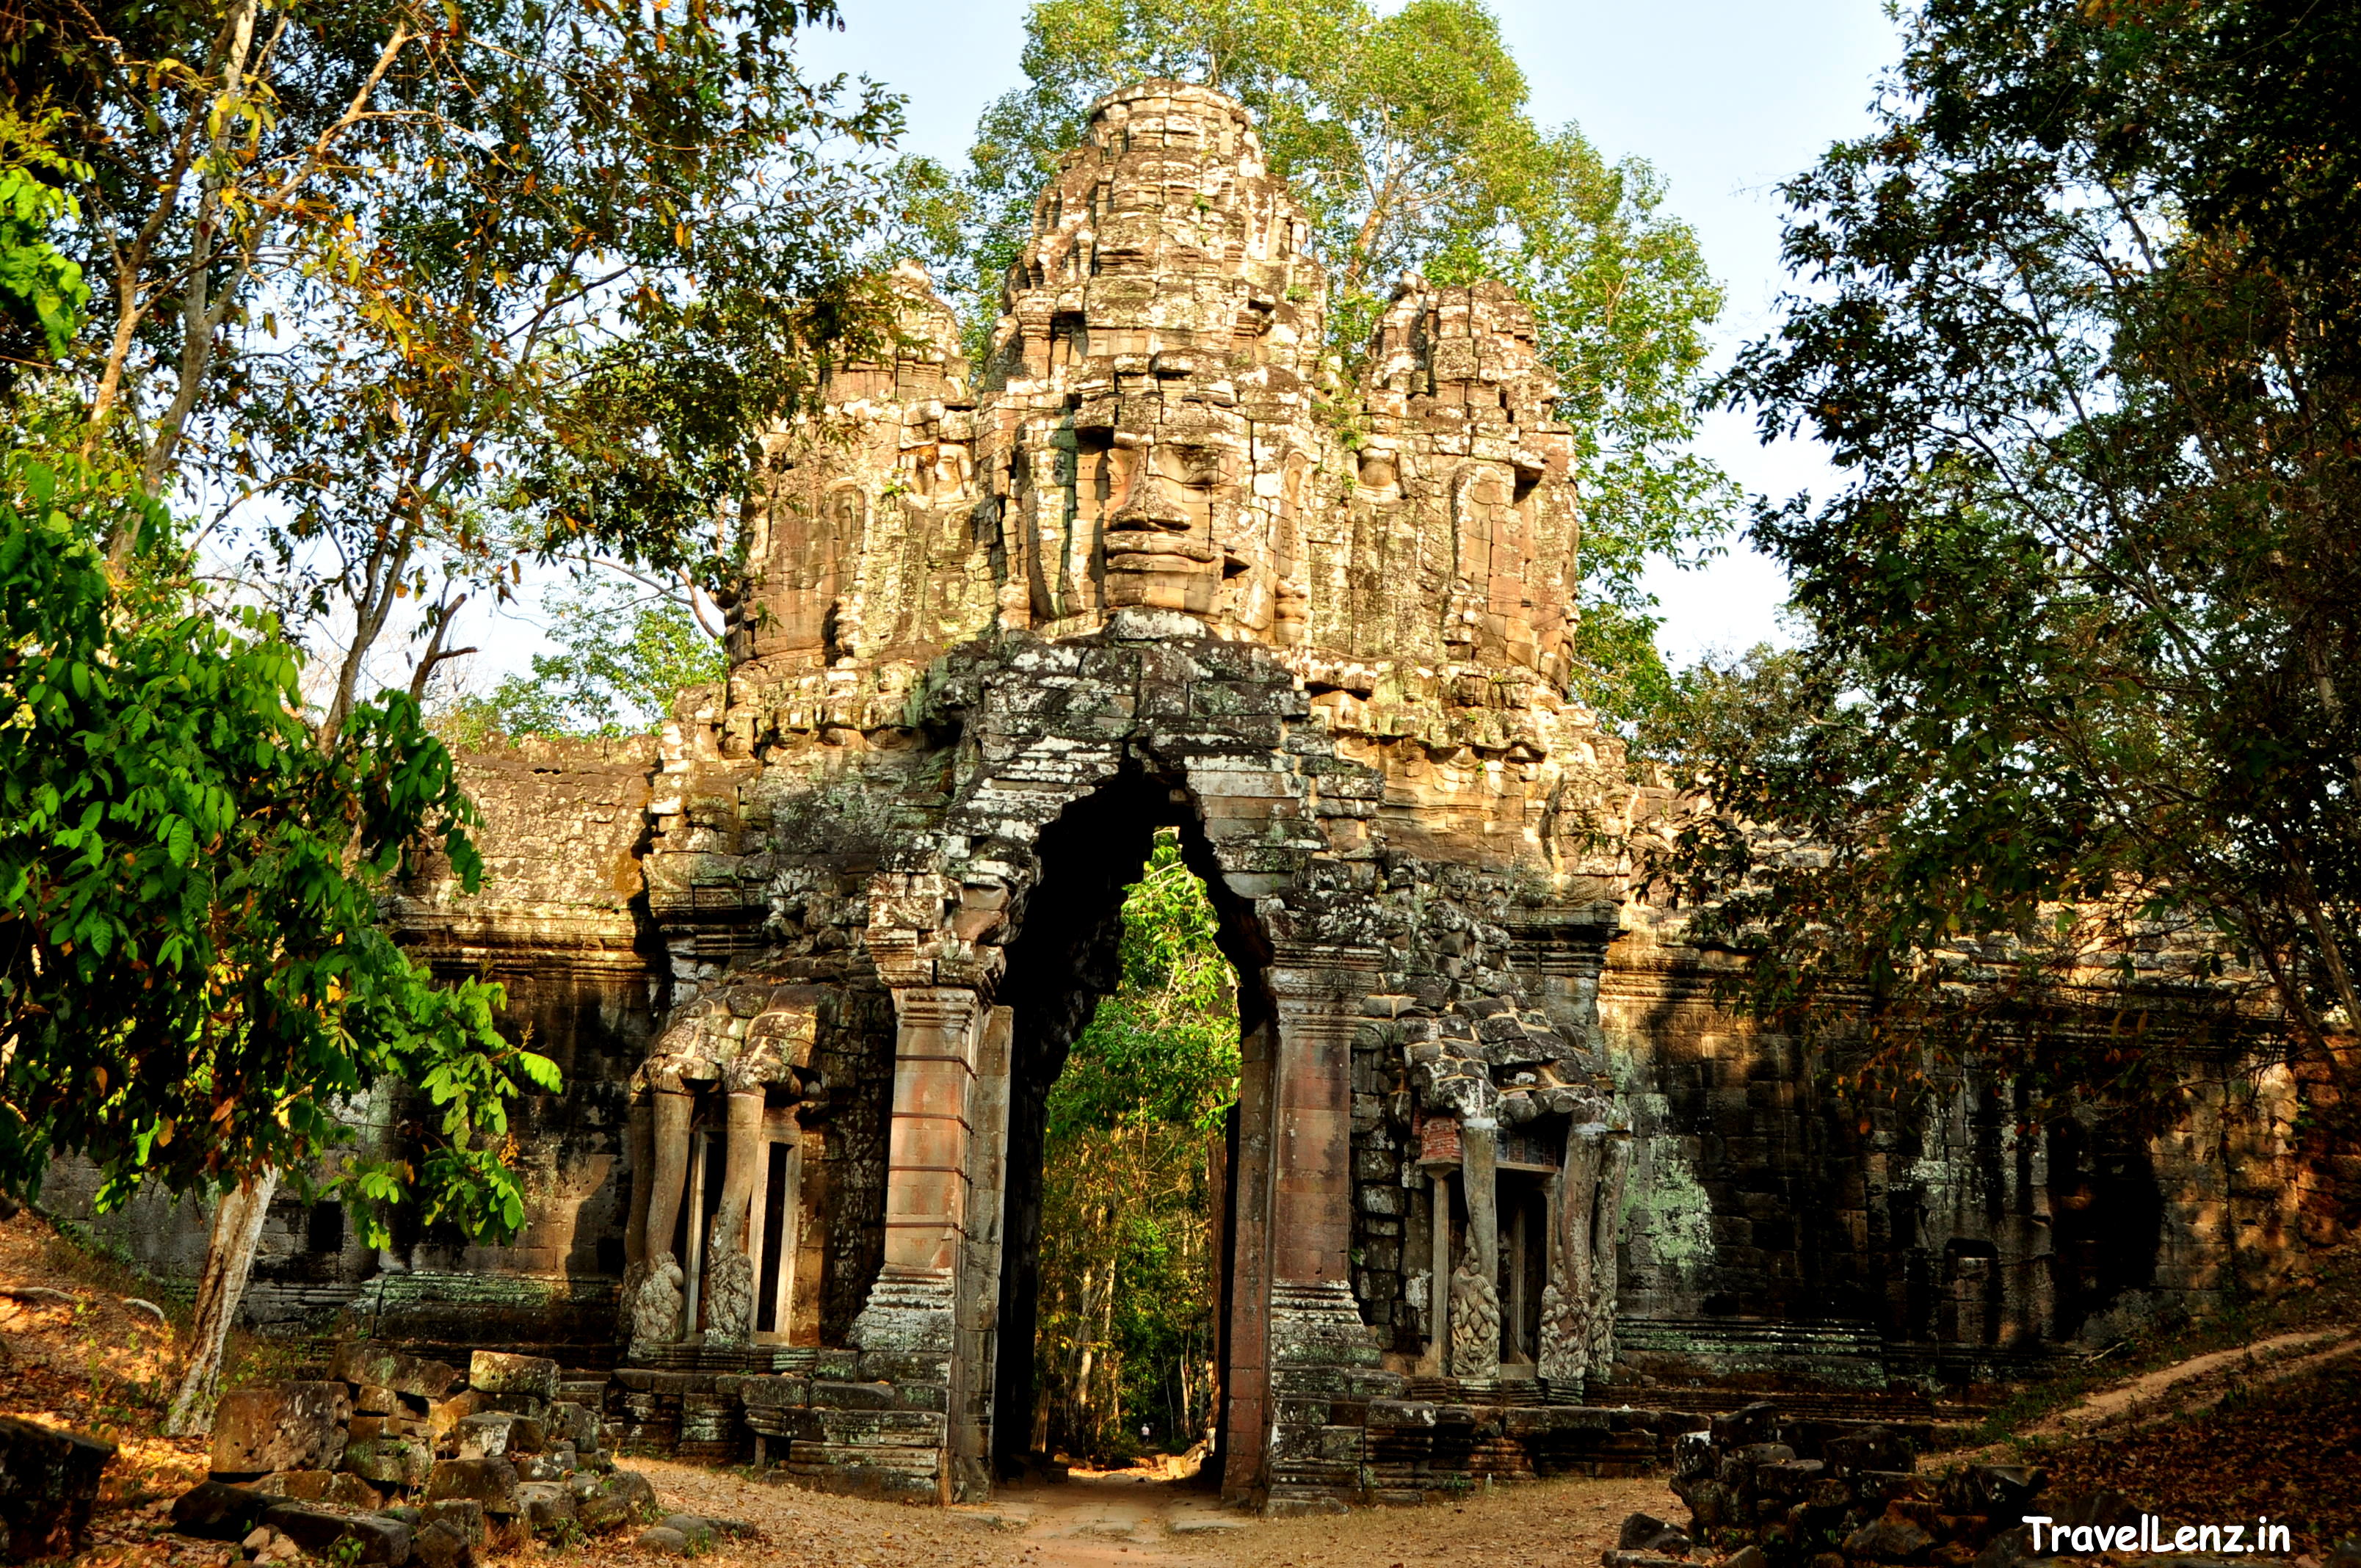 A face tower at Angkor